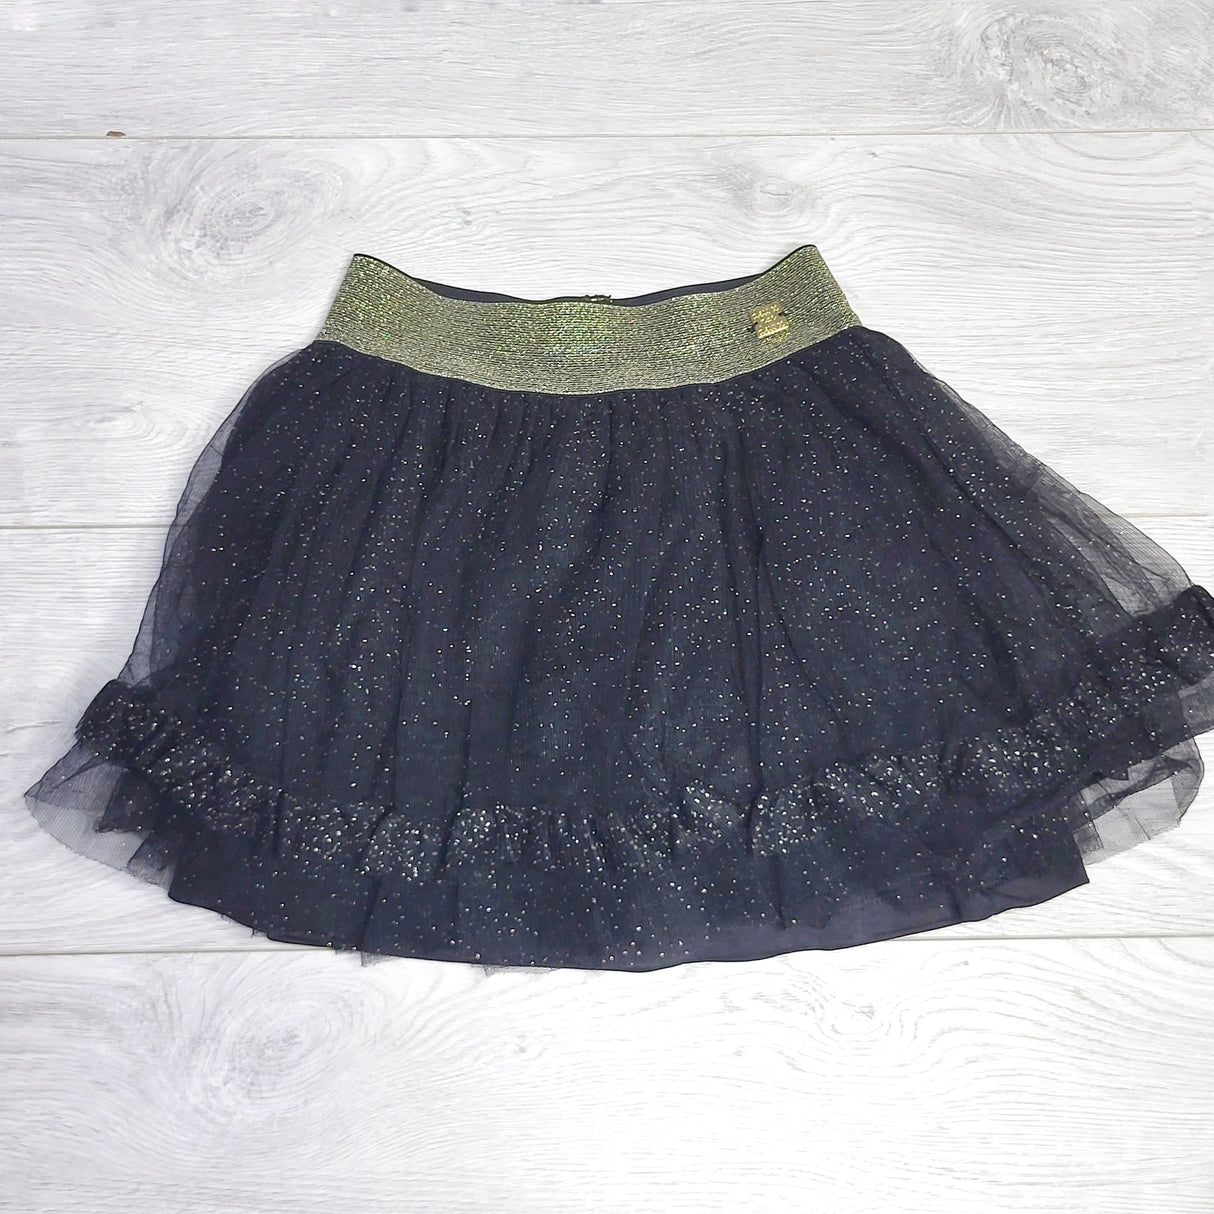 HWIL1 - Deux Par Deux black floral printed tulle skirt. Size 5T